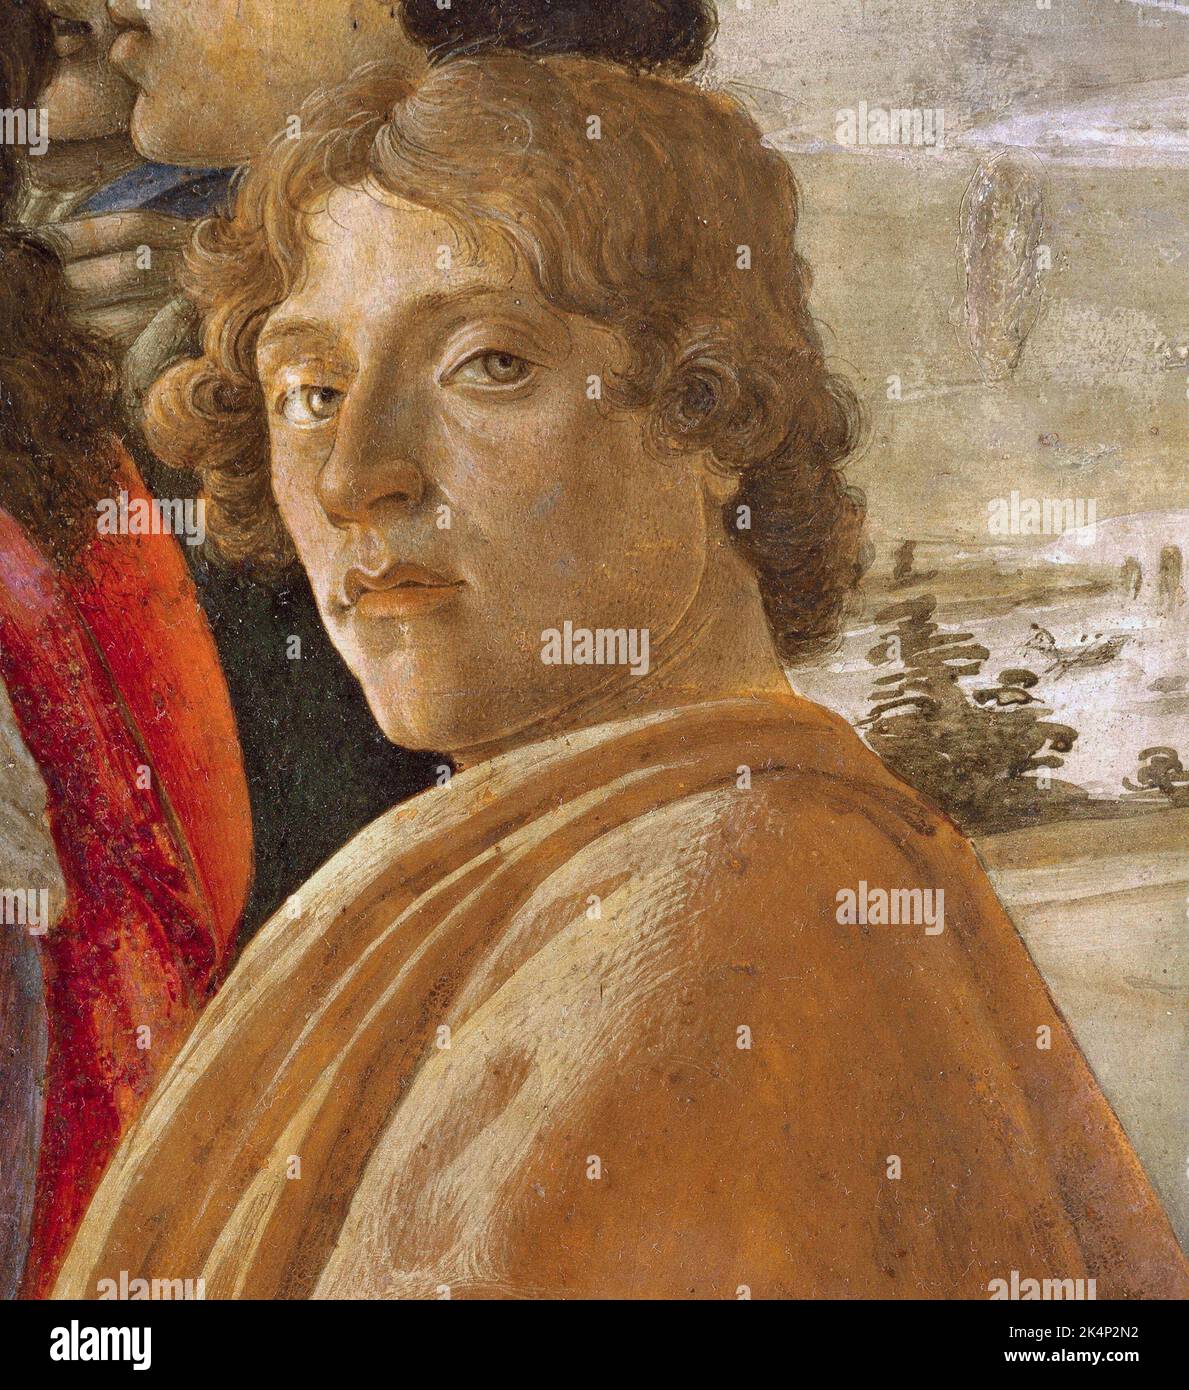 Botticelli, Alessandro di Mariano di Vanni Filipepi (c. 1445 – 1510), conocido como Sandro Botticelli, pintor italiano de principios del Renacimiento. Foto de stock